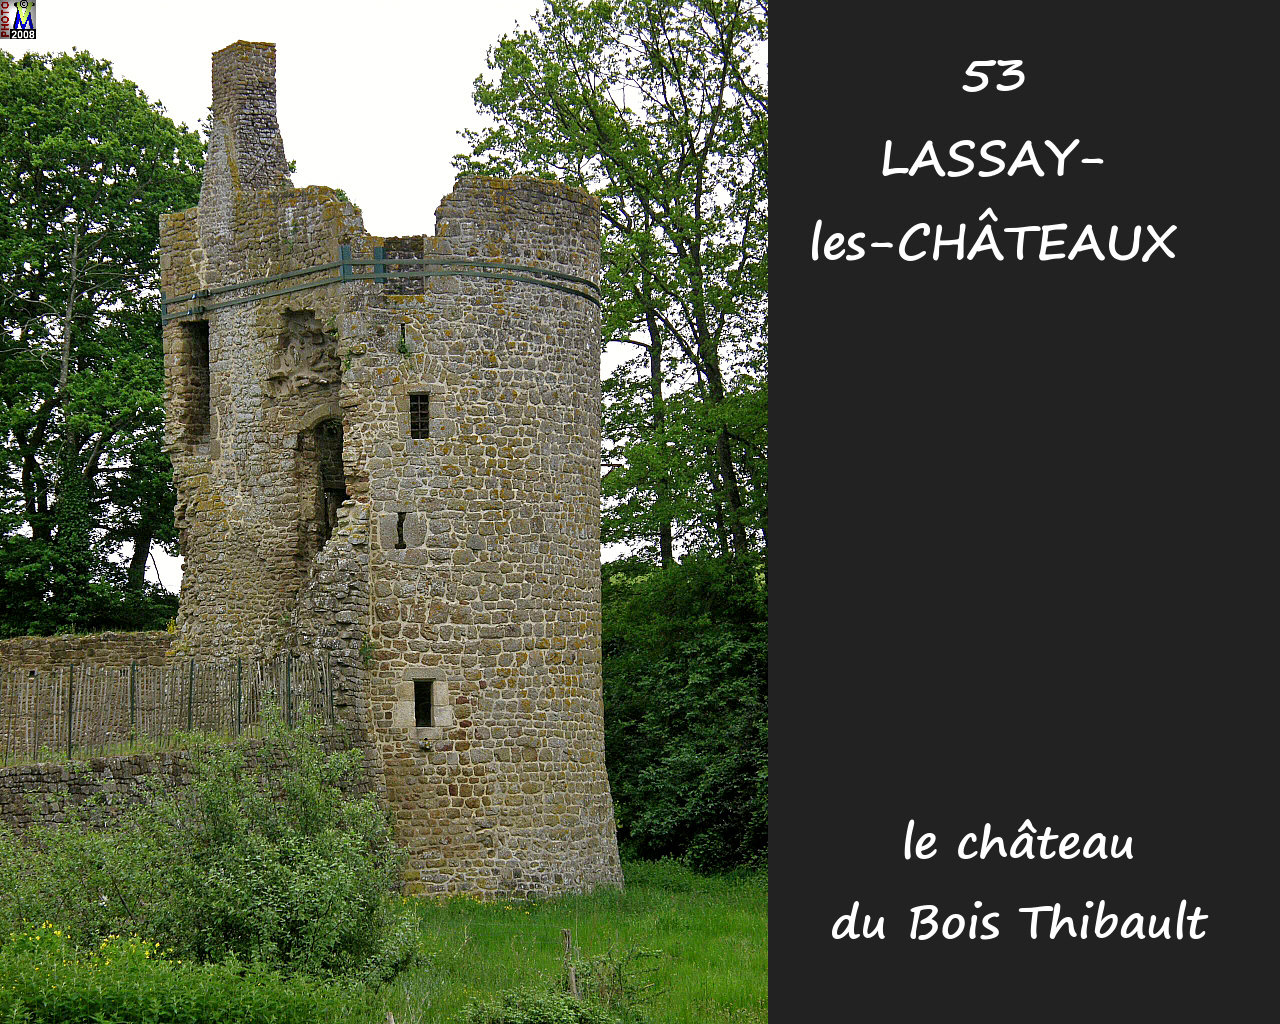 53LASSAY-CHATEAUX_chateauBT_116.jpg